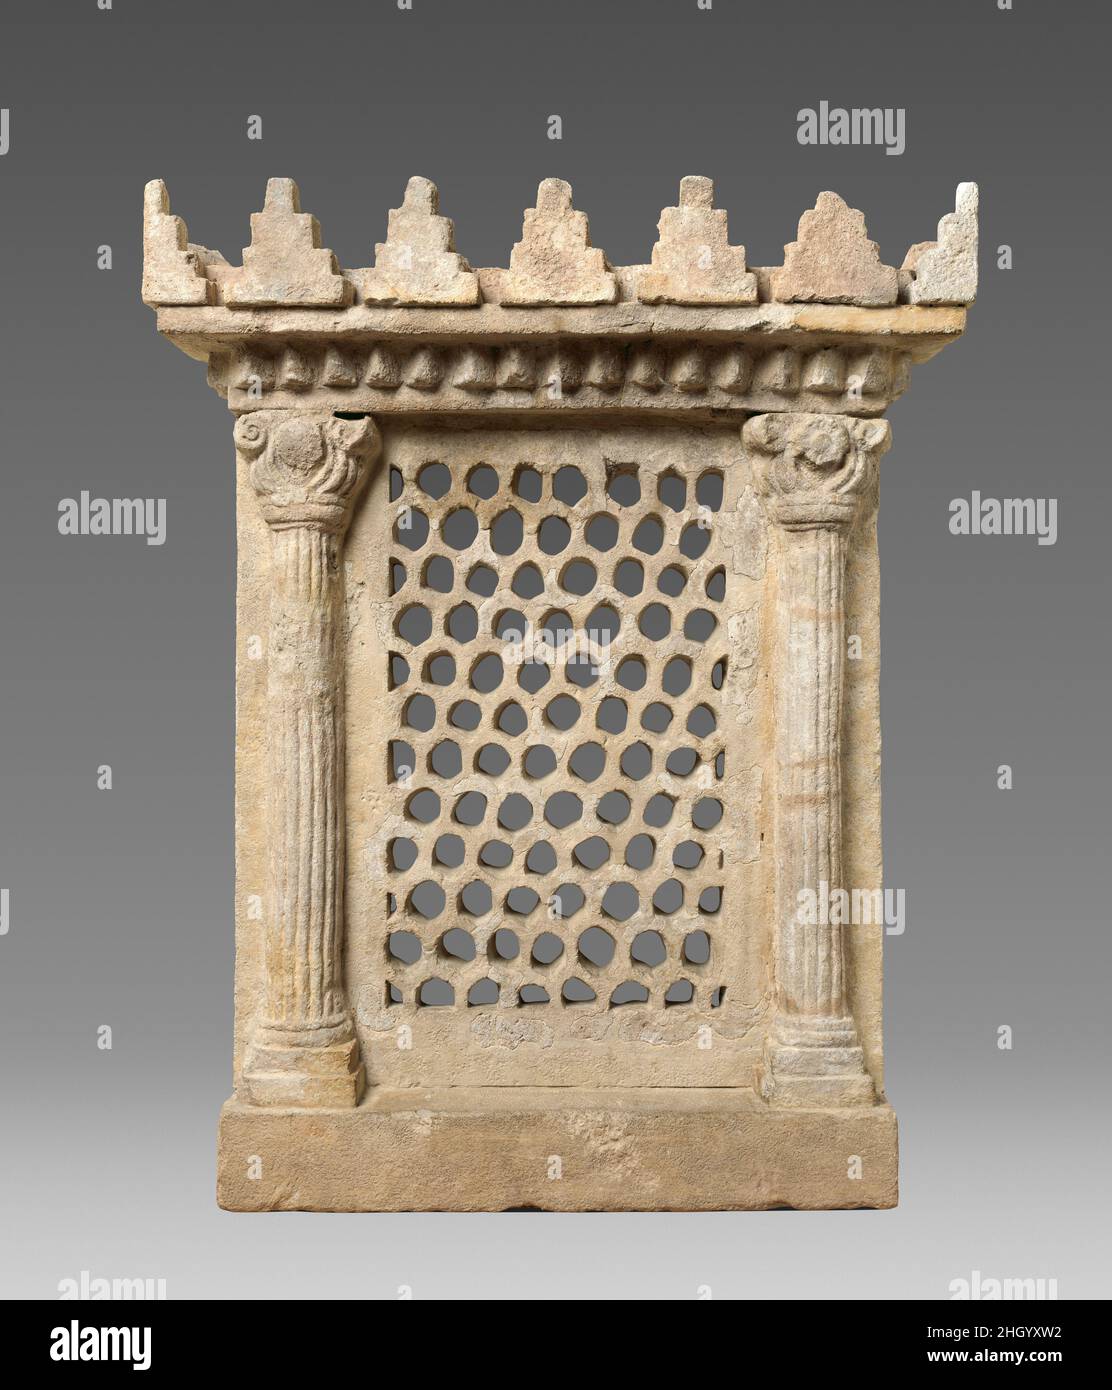 Schermata finestra ca. 6th–7th secolo d.C. Sasanian (?) Questa finestra sarebbe stata utilizzata per consentire la circolazione dell'aria nell'edificio ottagonale a cupola nell'area occidentale di Qasr-i Abu Nasr. Include uno schermo a motivi geometrici, affiancato da due colonne e sormontato da un motivo merlato. La piccola città e fortezza di Qasr-i Abu Nasr si trova vicino a Shiraz, nel sud dell'Iran, in un punto strategico all'intersezione di montagne difensive, fonti d'acqua disponibili, e lungo le strade che entrano nella pianura di Shiraz. Il sito è stato scavato dagli archeologi del Metropolitan Museum of Art per tre stagioni fra Foto Stock